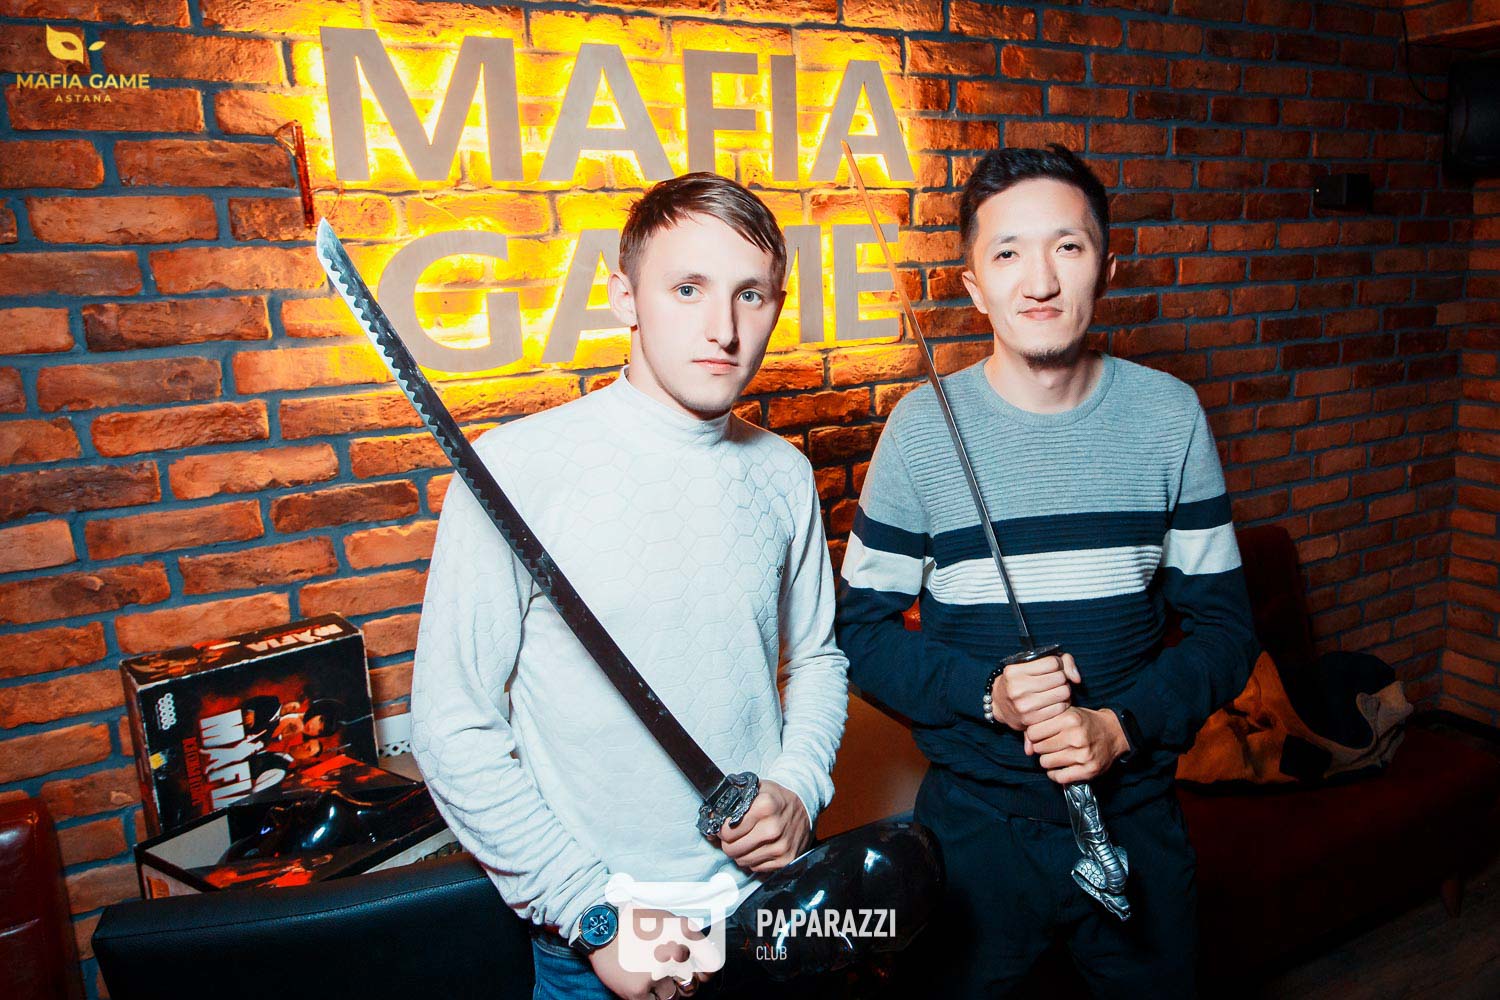 Mafia Game Astana